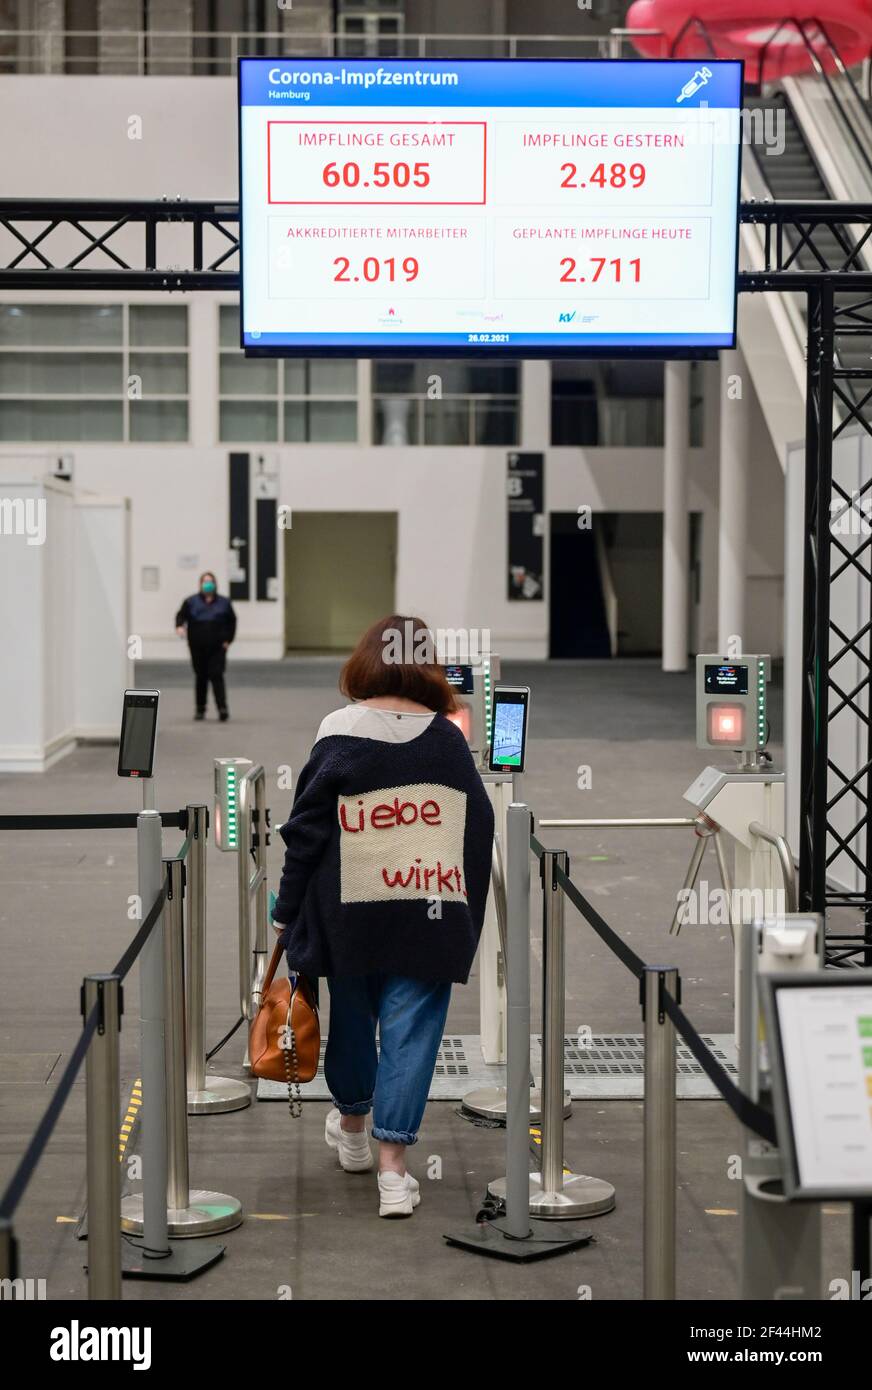 ALLEMAGNE, Hambourg, corona pandémie, plus grand centre de vaccination en Allemagne, pour 7000 personnes maximum par jour , entrée pour les employés avec des tests de température numériques Banque D'Images